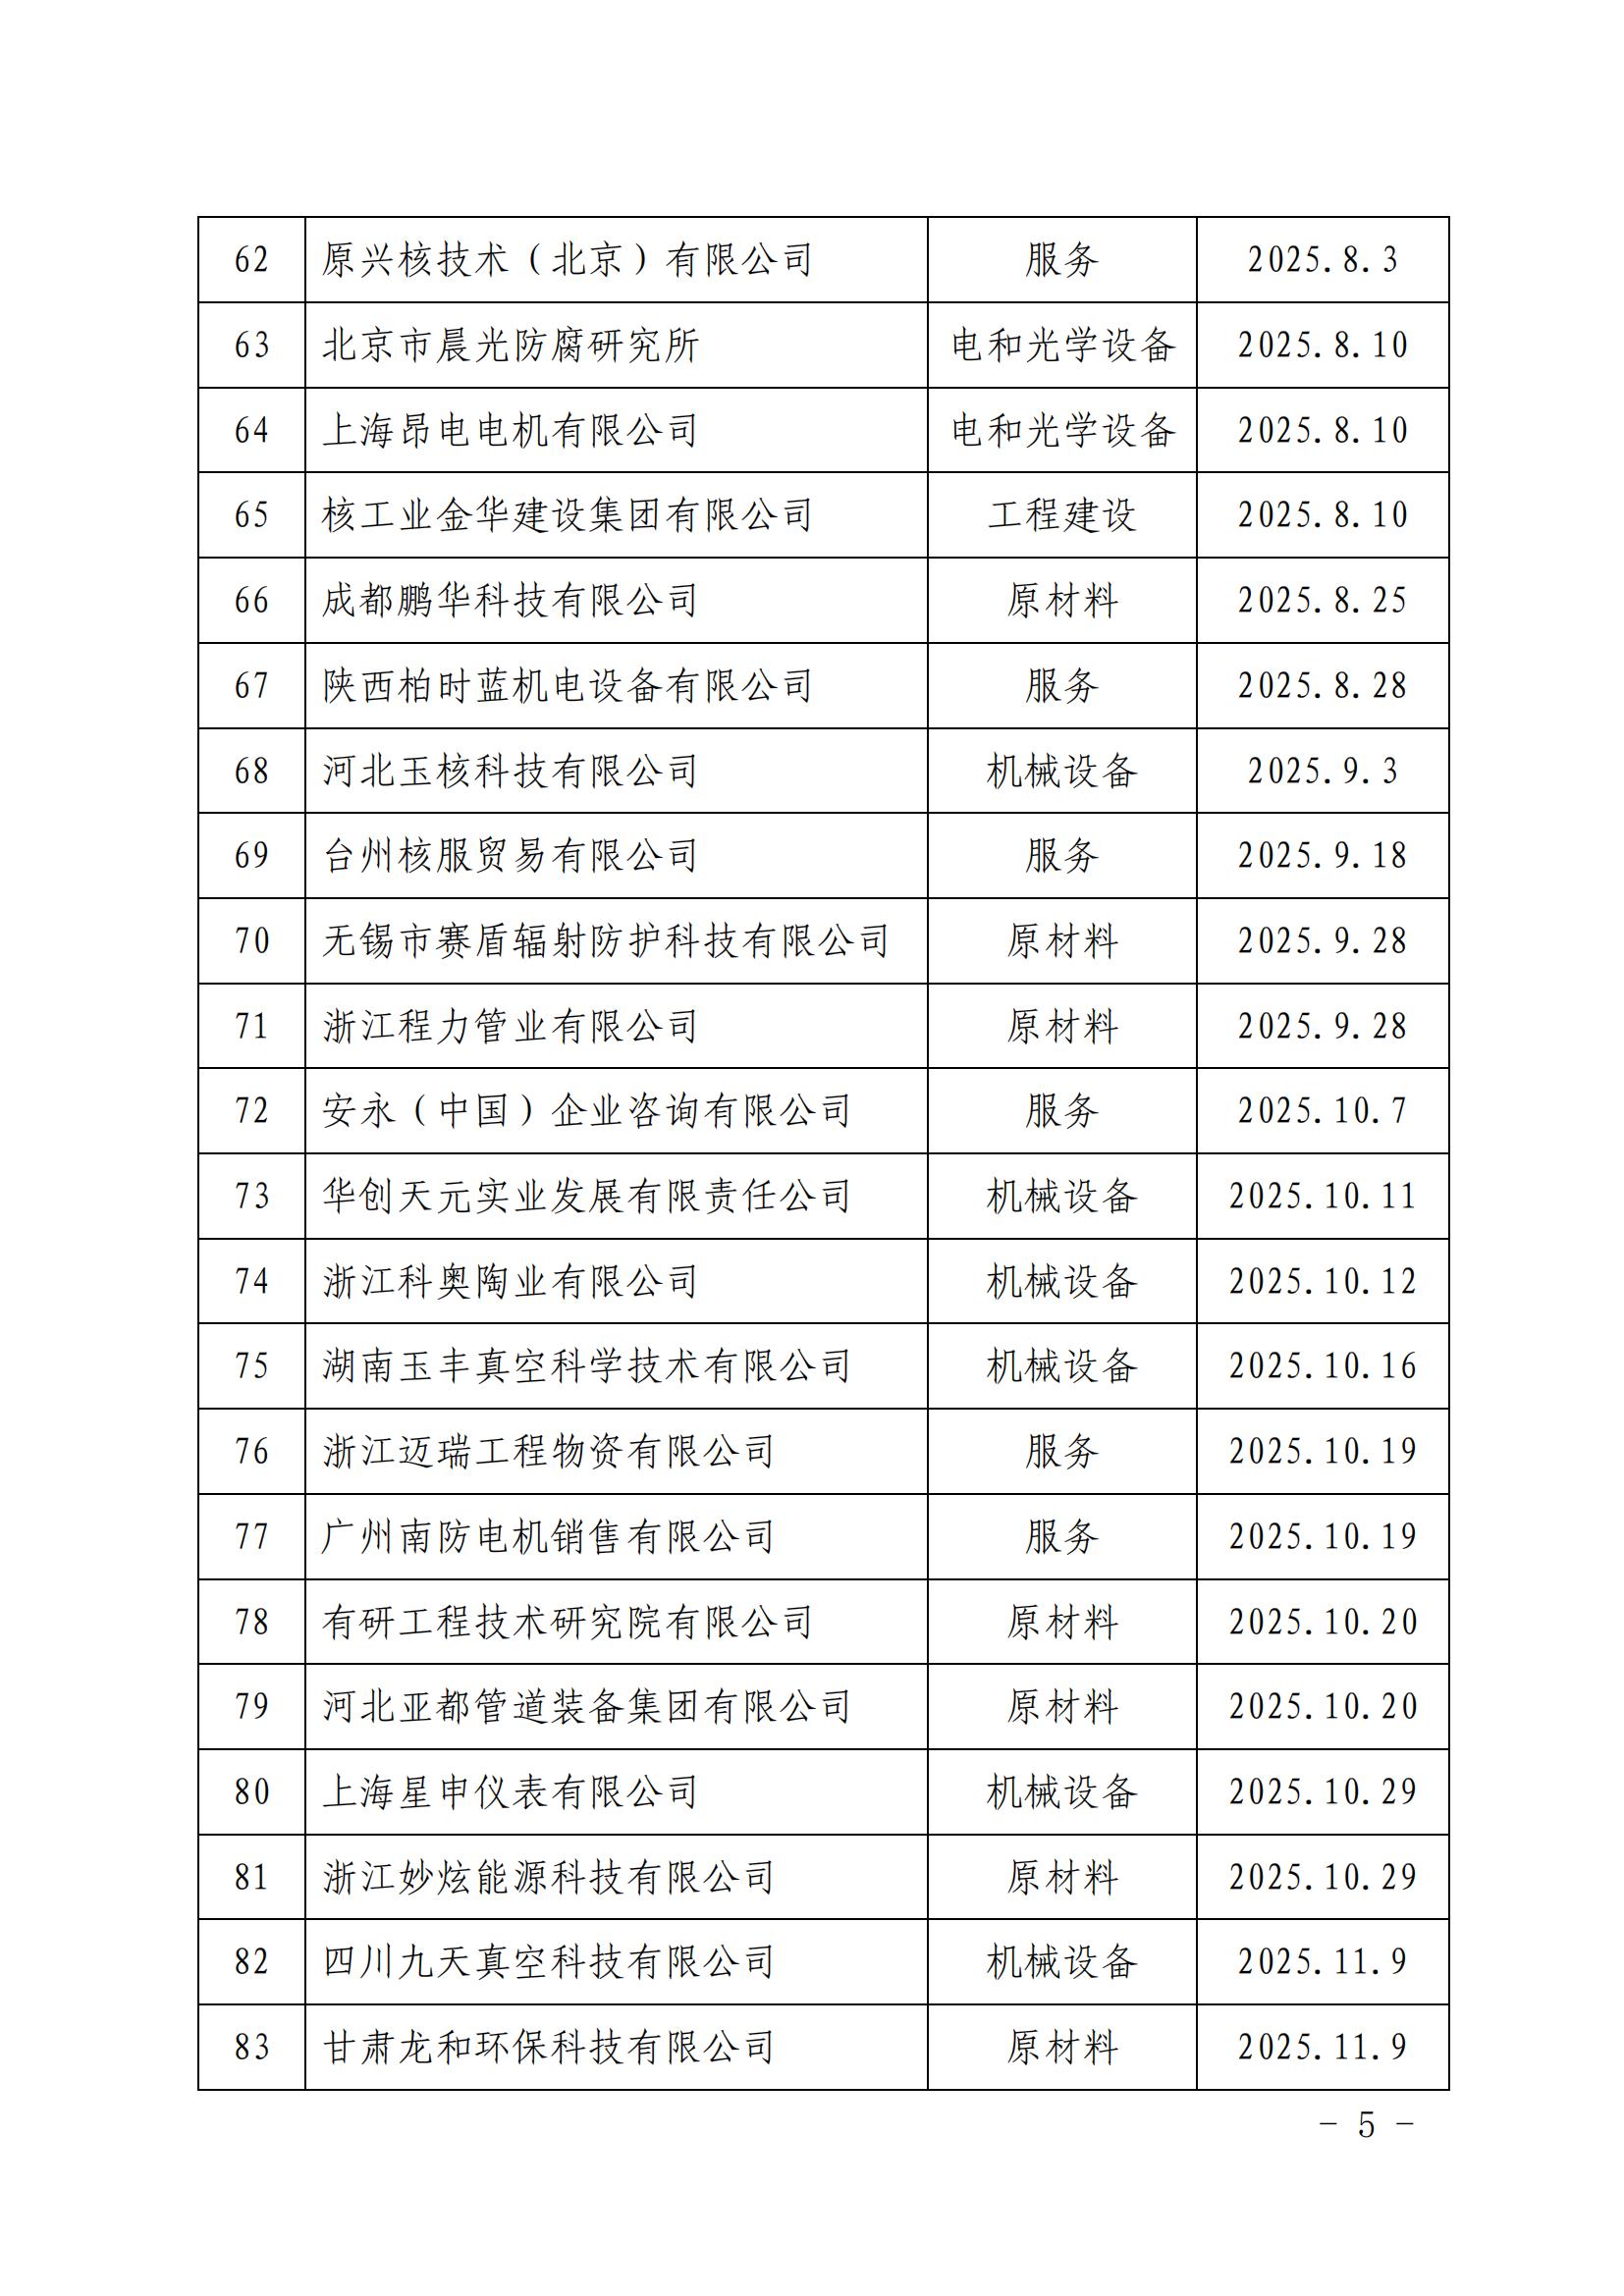 中国核能行业协会关于发布第十九批核能行业合格供应商名录的公告_04.jpg